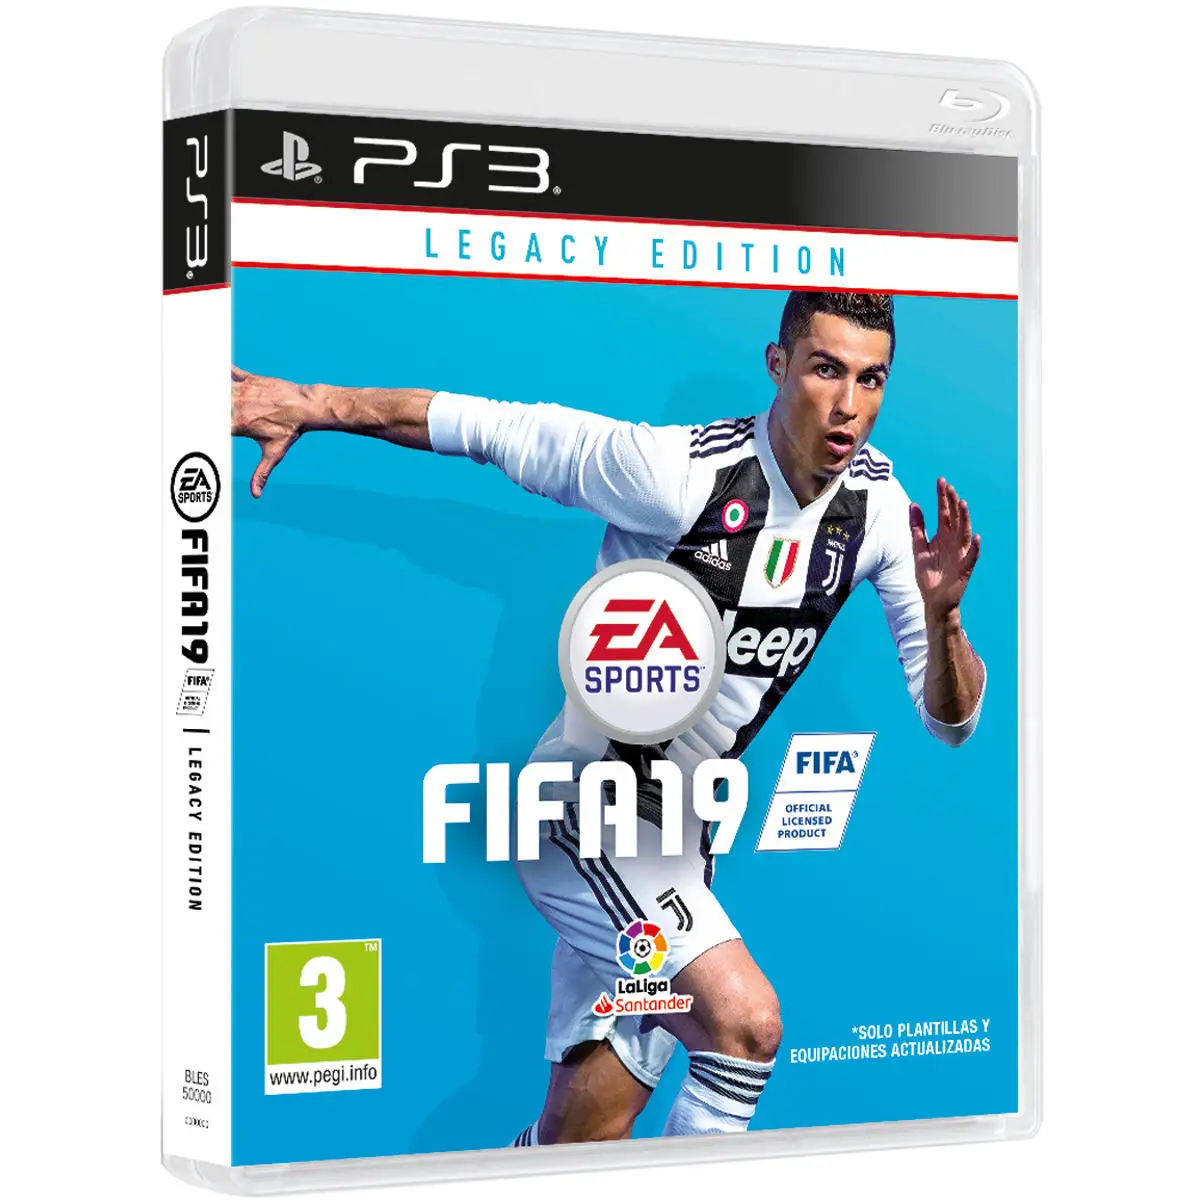 Fifa 19 Legacy Edition Ps3 Juegos Playstation 3 Electronic Arts Software  S.L. Deportes Edad 3+|Ofertas de juegos| - AliExpress